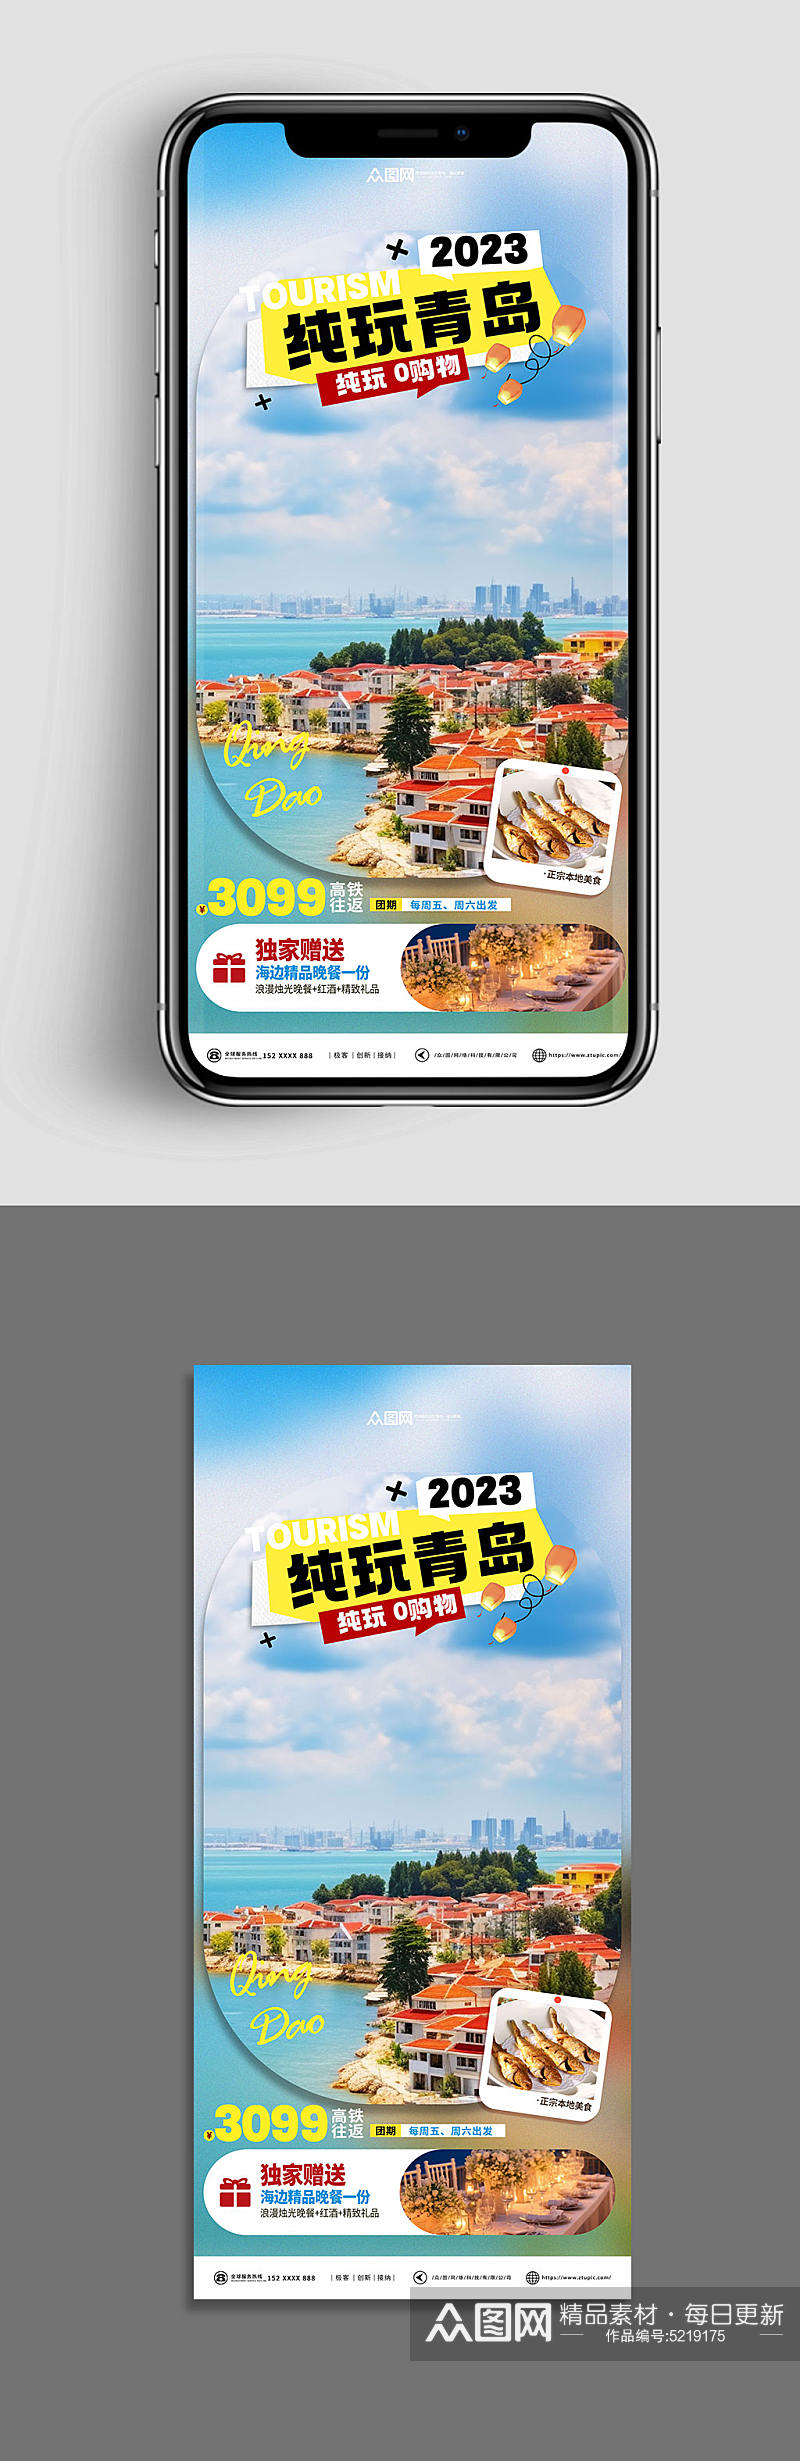 十一出行国庆旅行社旅游宣传海报素材